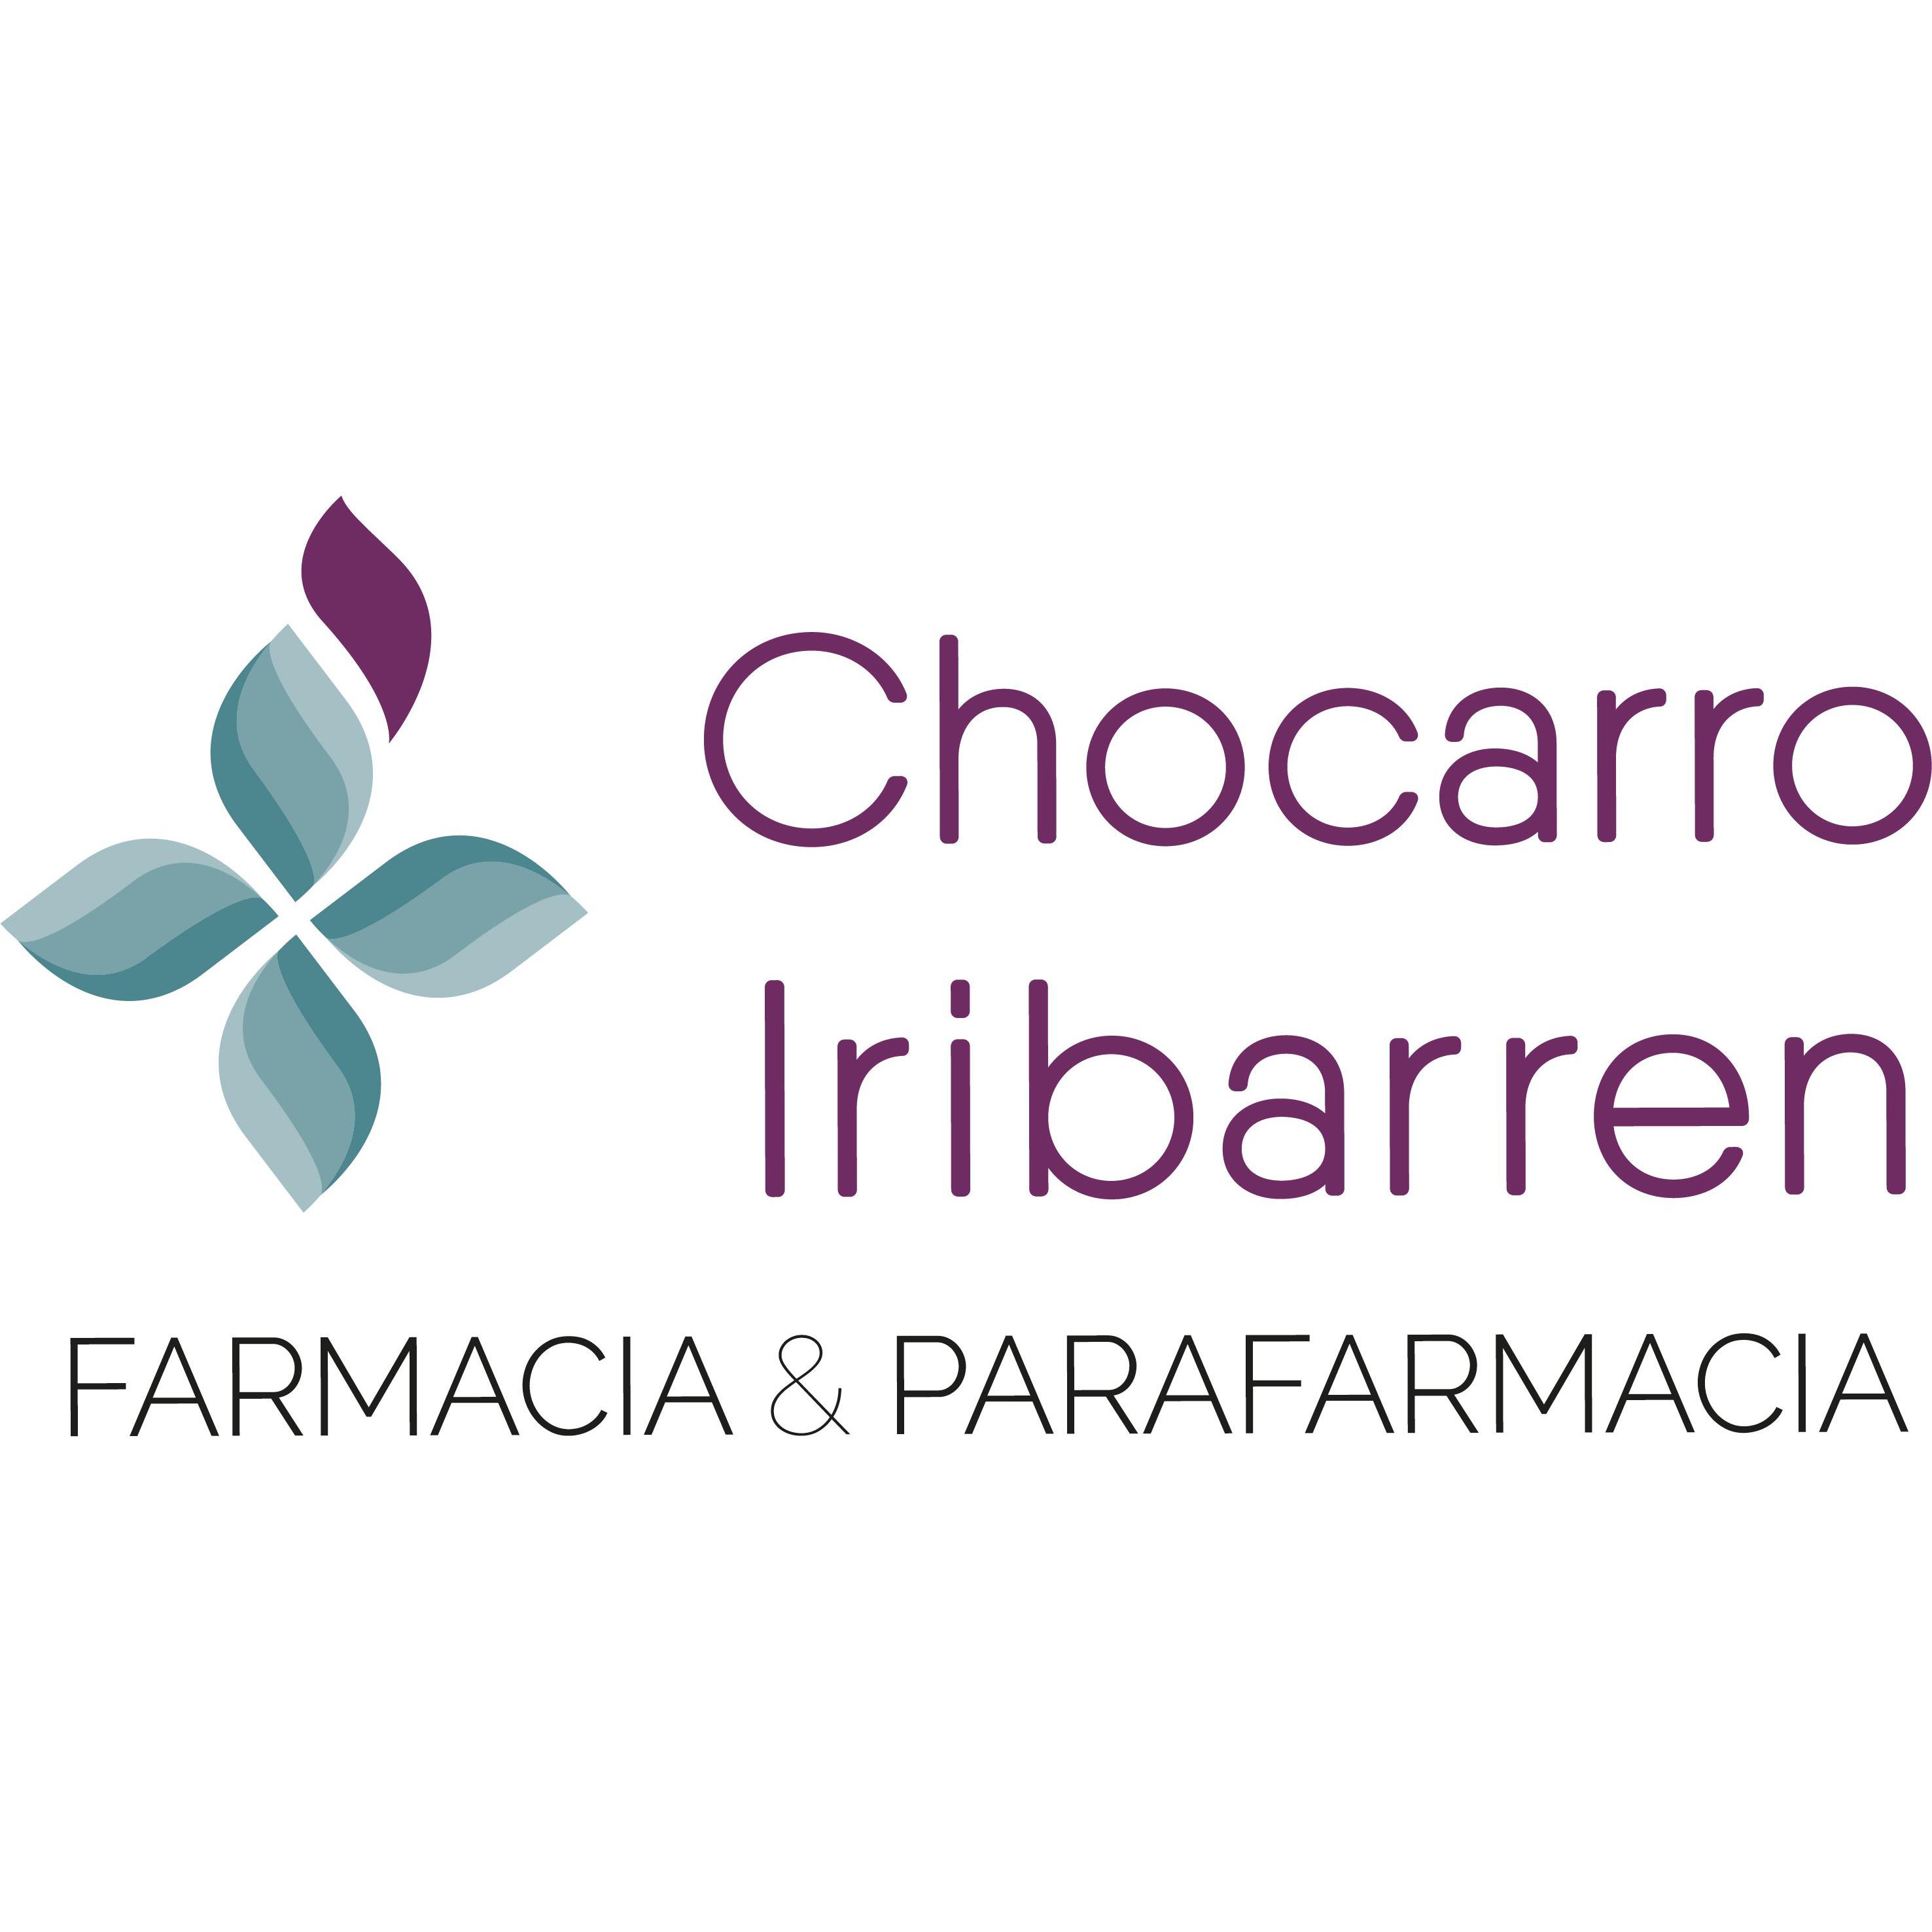 Farmacia Chocarro Iribarren Logo